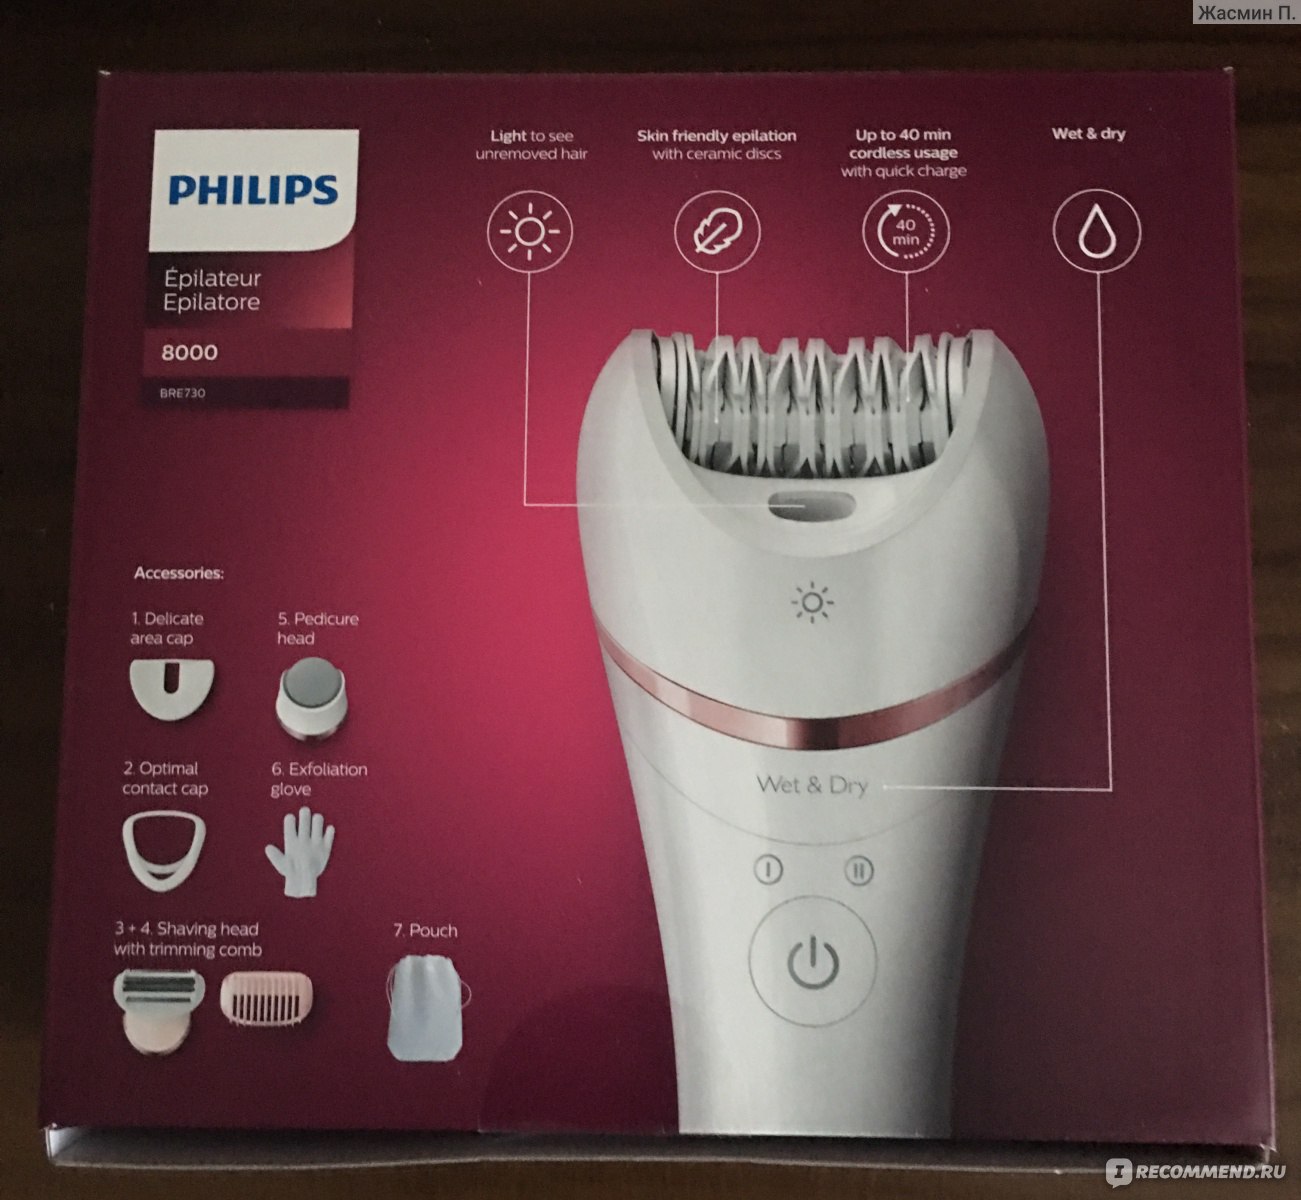 Philips epilator series 8000